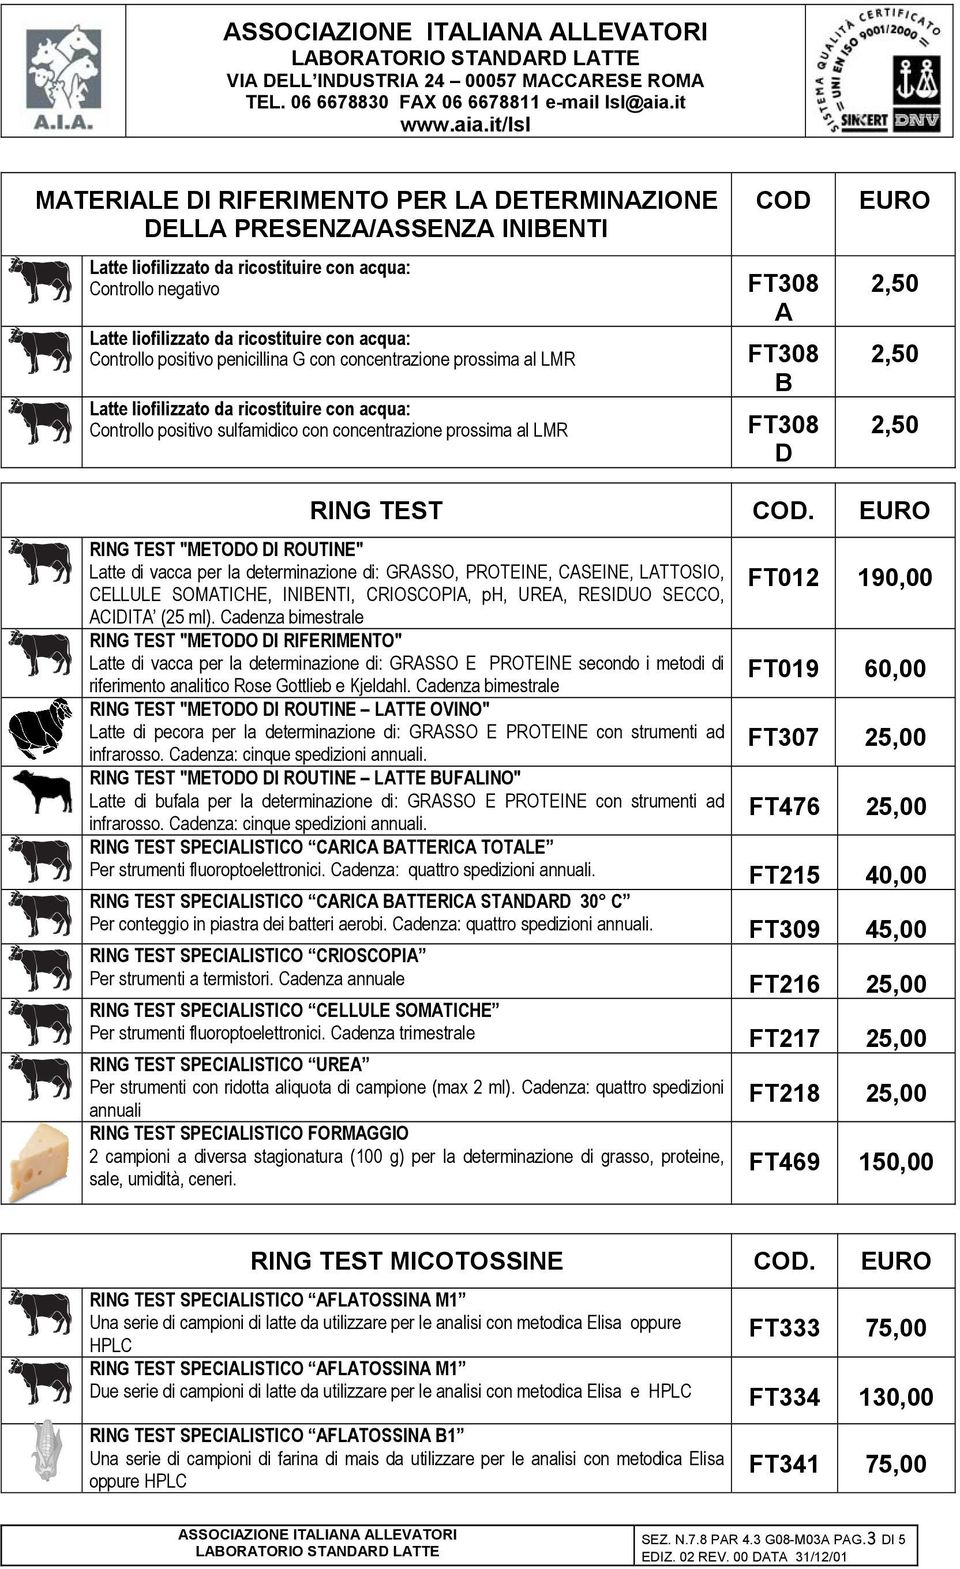 RING TEST "METODO DI ROUTINE" Latte di vacca per la determinazione di: GRASSO, PROTEINE, CASEINE, LATTOSIO, CELLULE SOMATICHE, INIBENTI, CRIOSCOPIA, ph, UREA, RESIDUO SECCO, ACIDITA (25 ml).